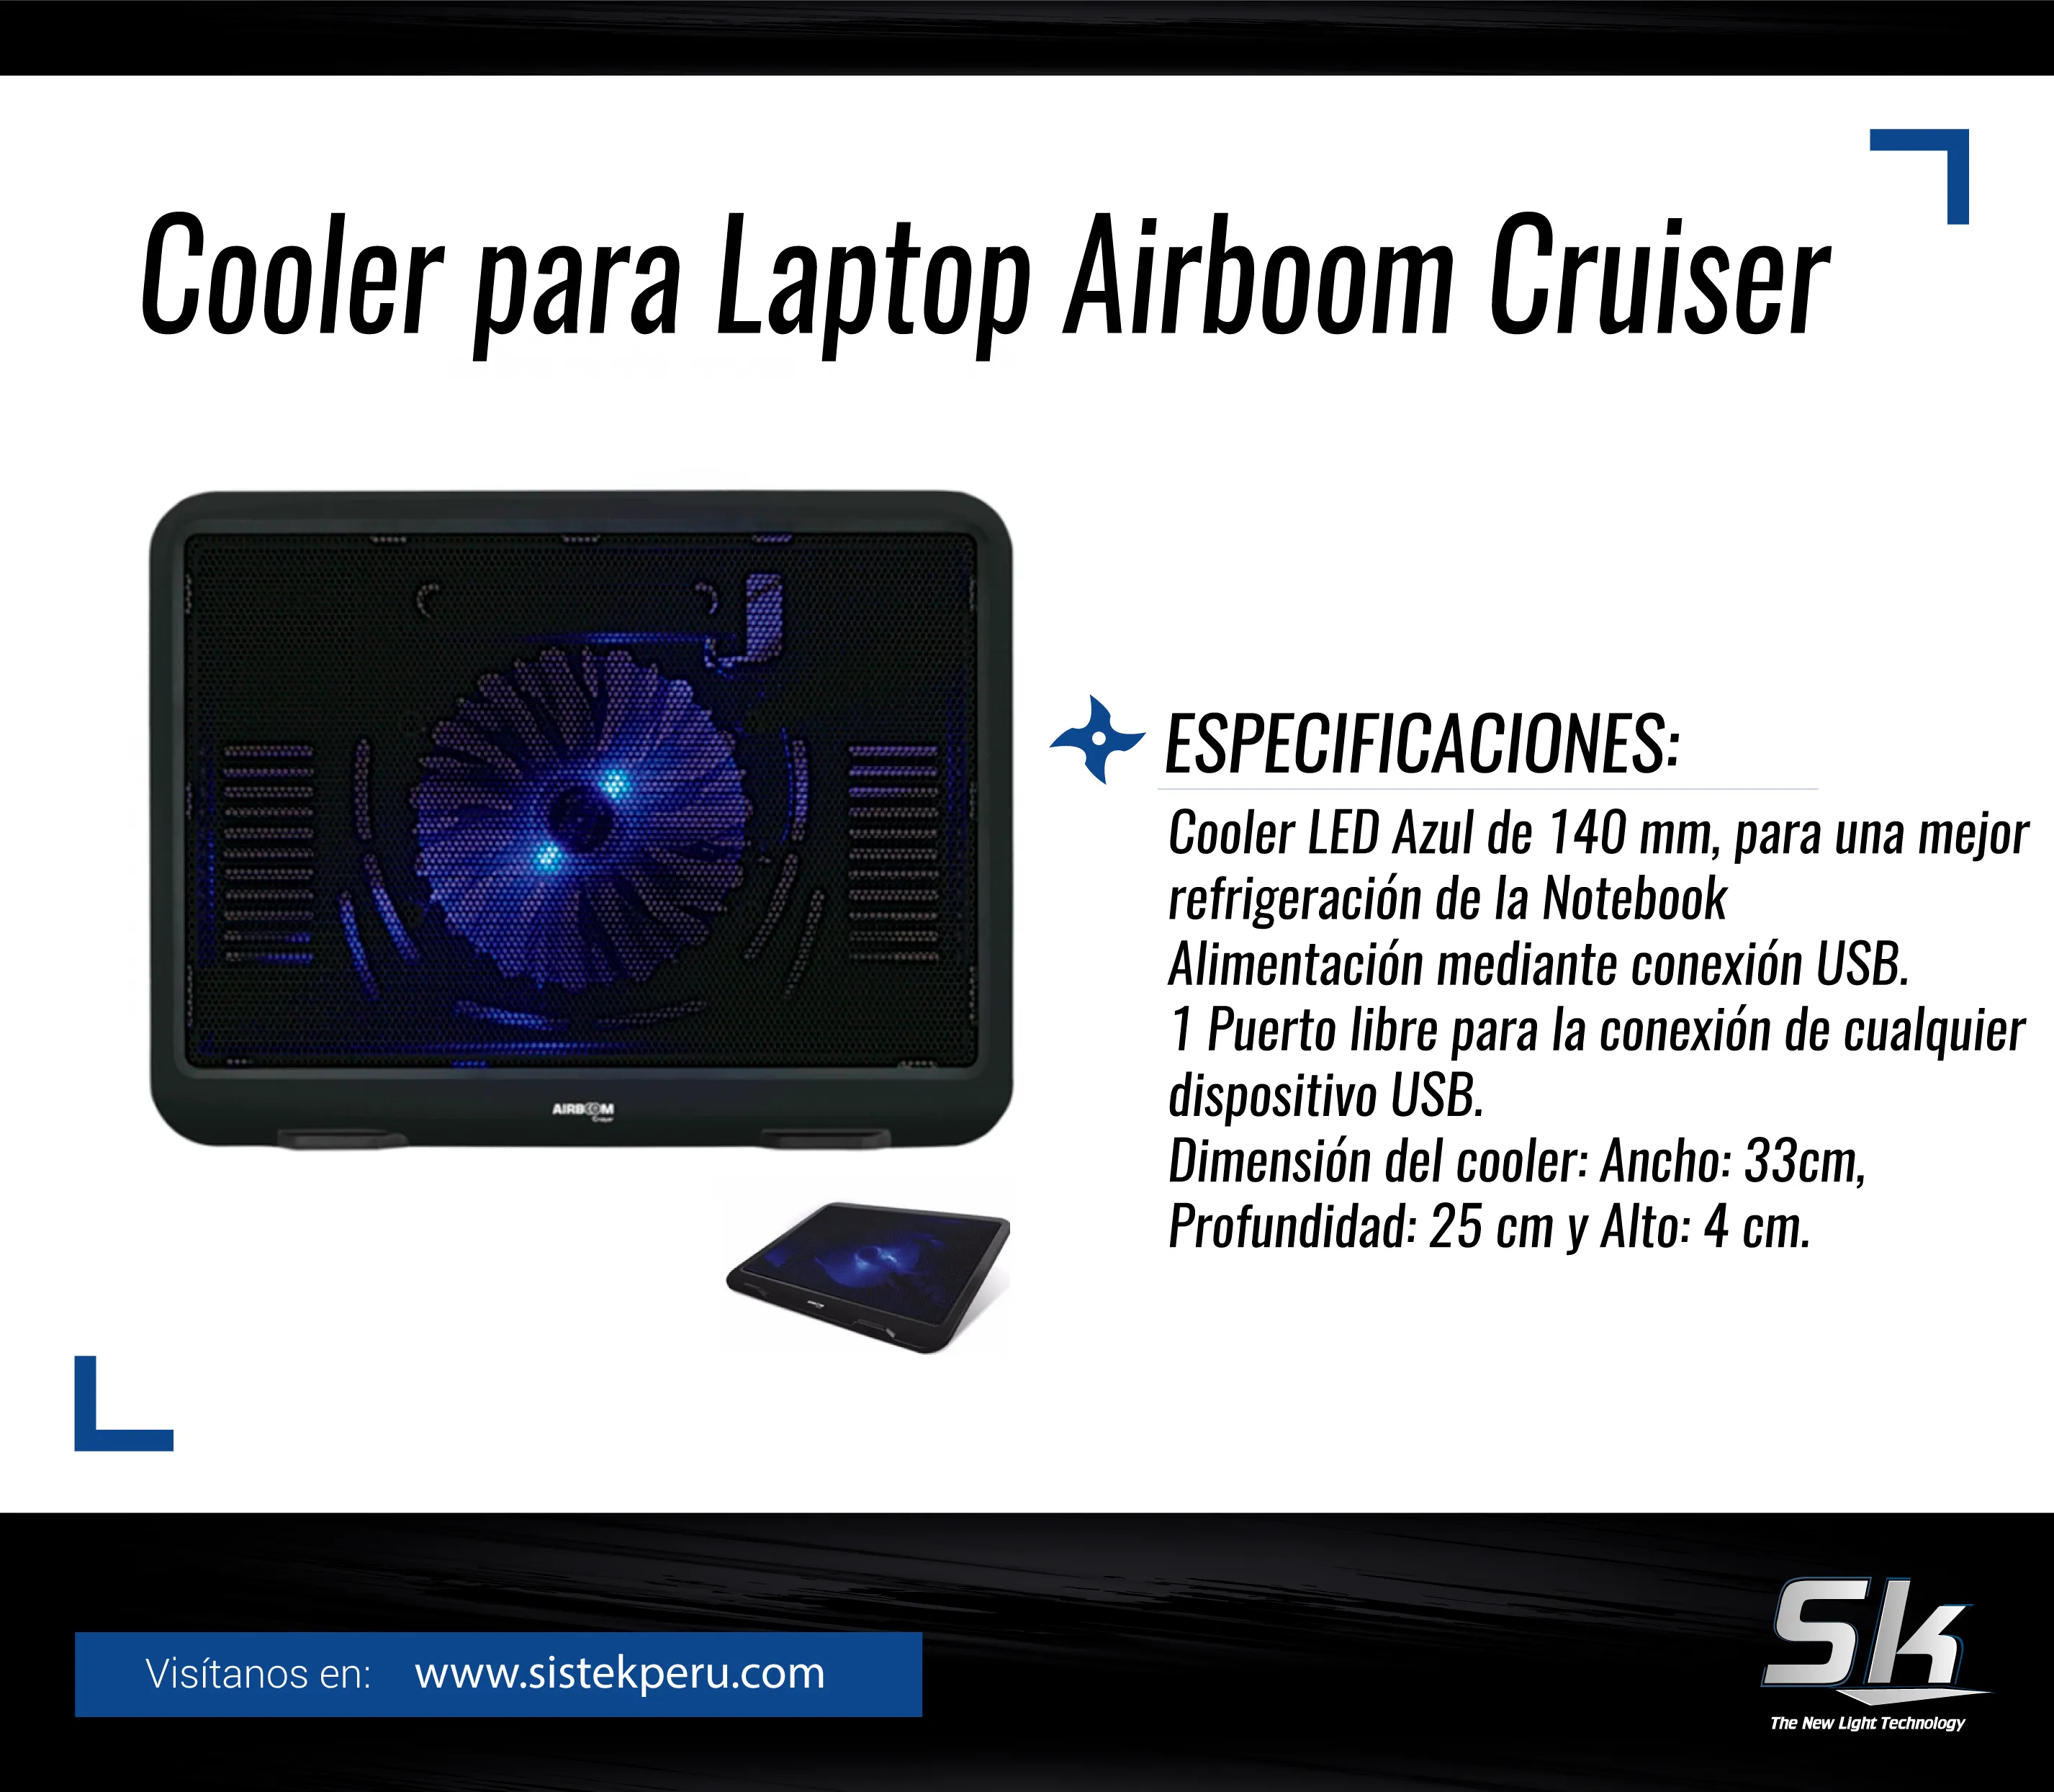 Cooler para Laptop Airboom Cruiser-x